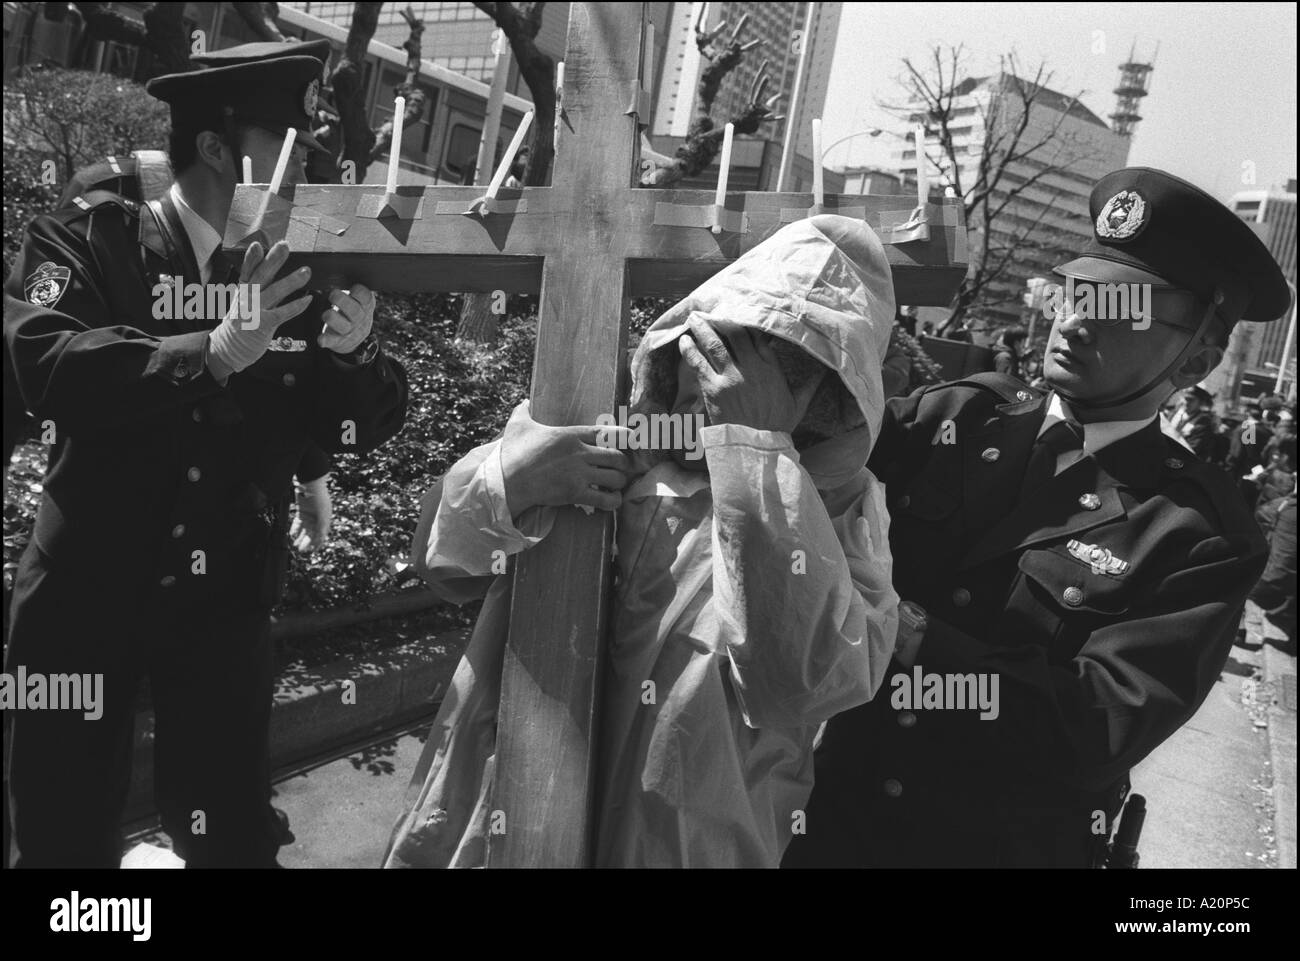 Poliziotti di rimuovere un protestor e il suo crocifisso in legno che lui ci era stato portante durante l'anti-war demo, Tokyo, Giappone Foto Stock